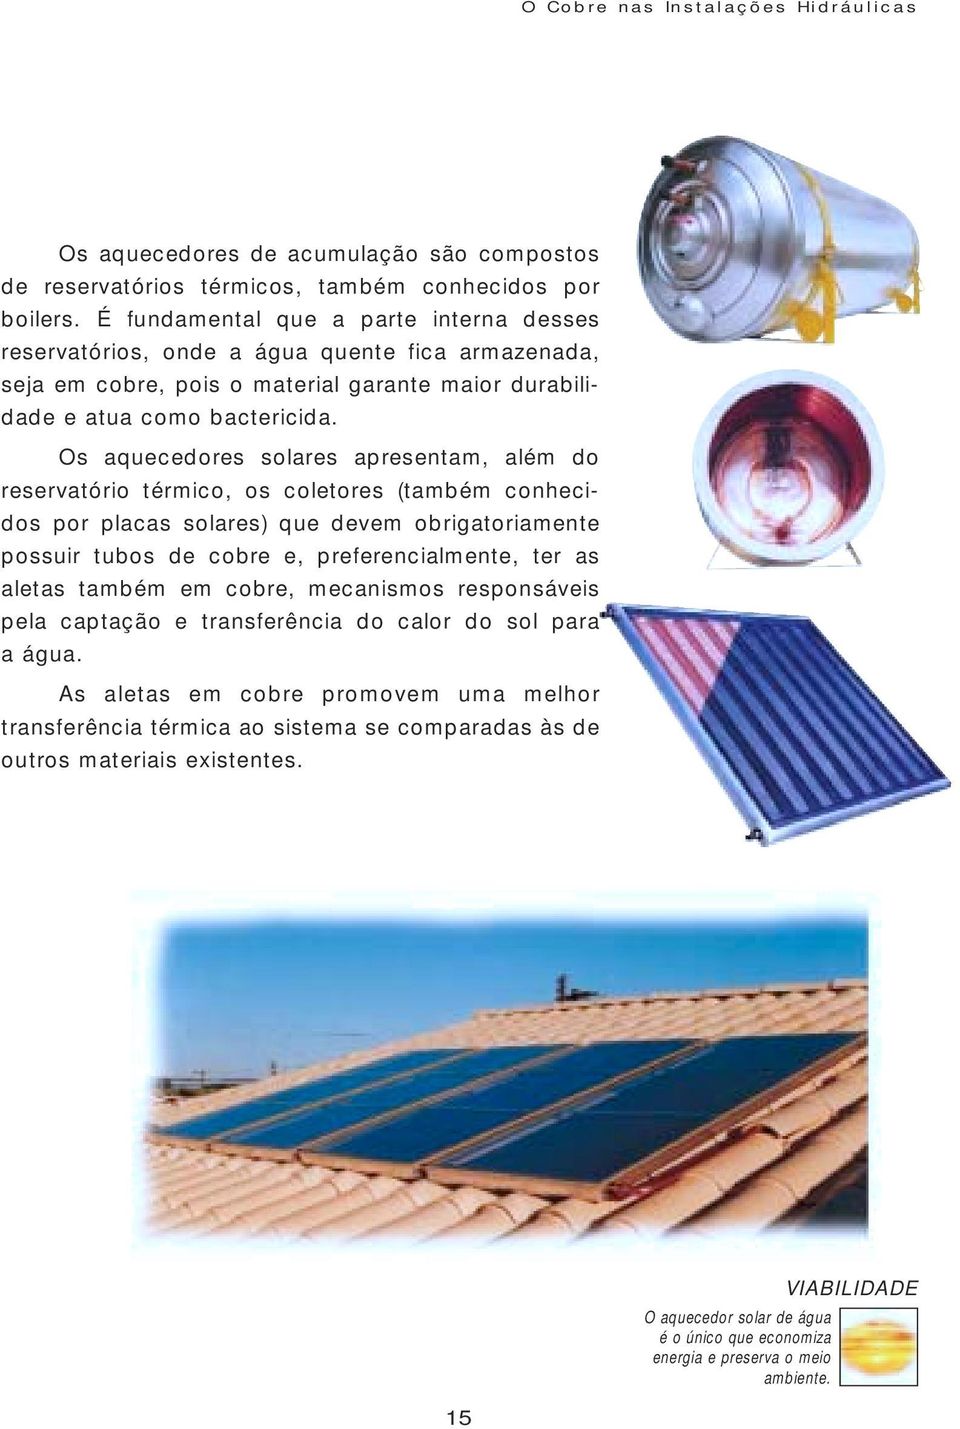 Os aquecedores solares apresentam, além do reservatório térmico, os coletores (também conhecidos por placas solares) que devem obrigatoriamente possuir tubos de cobre e, preferencialmente, ter as